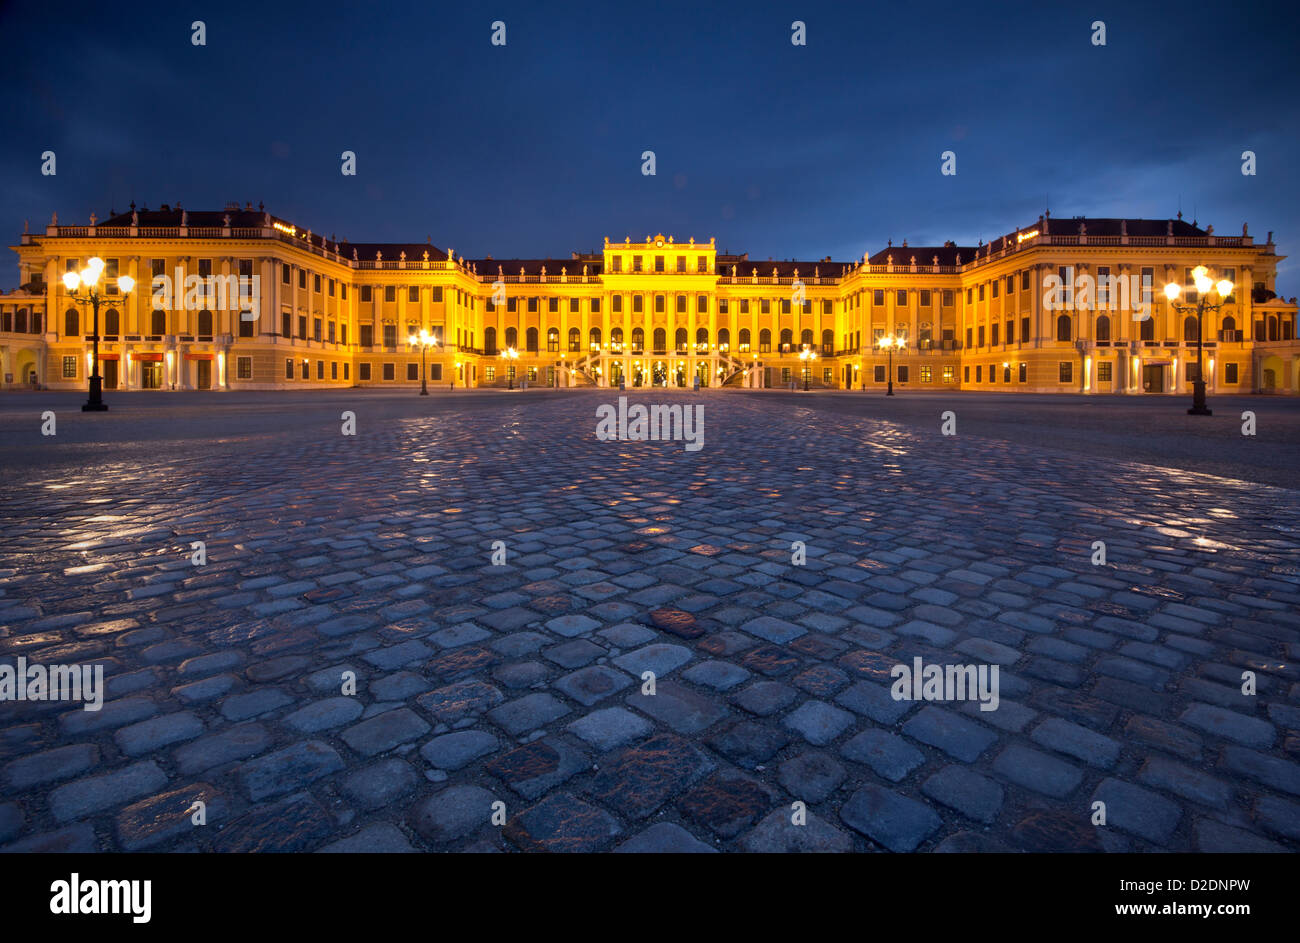 Palacio de Schonbrunn - pasarela frontal y la entrada por la noche - un hito de Viena, Austria Foto de stock